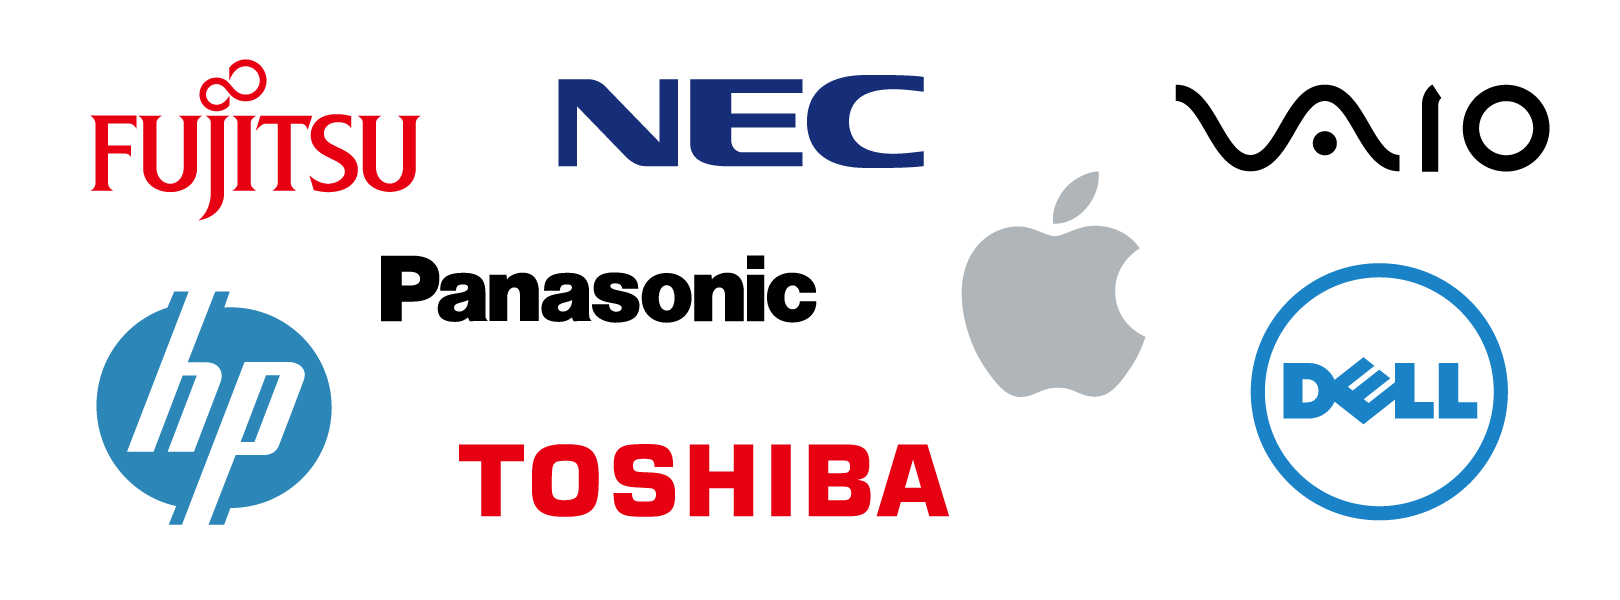 ITS・JAPAN法人向けキャンペーンはノートパソコンであればメーカーは問いません。